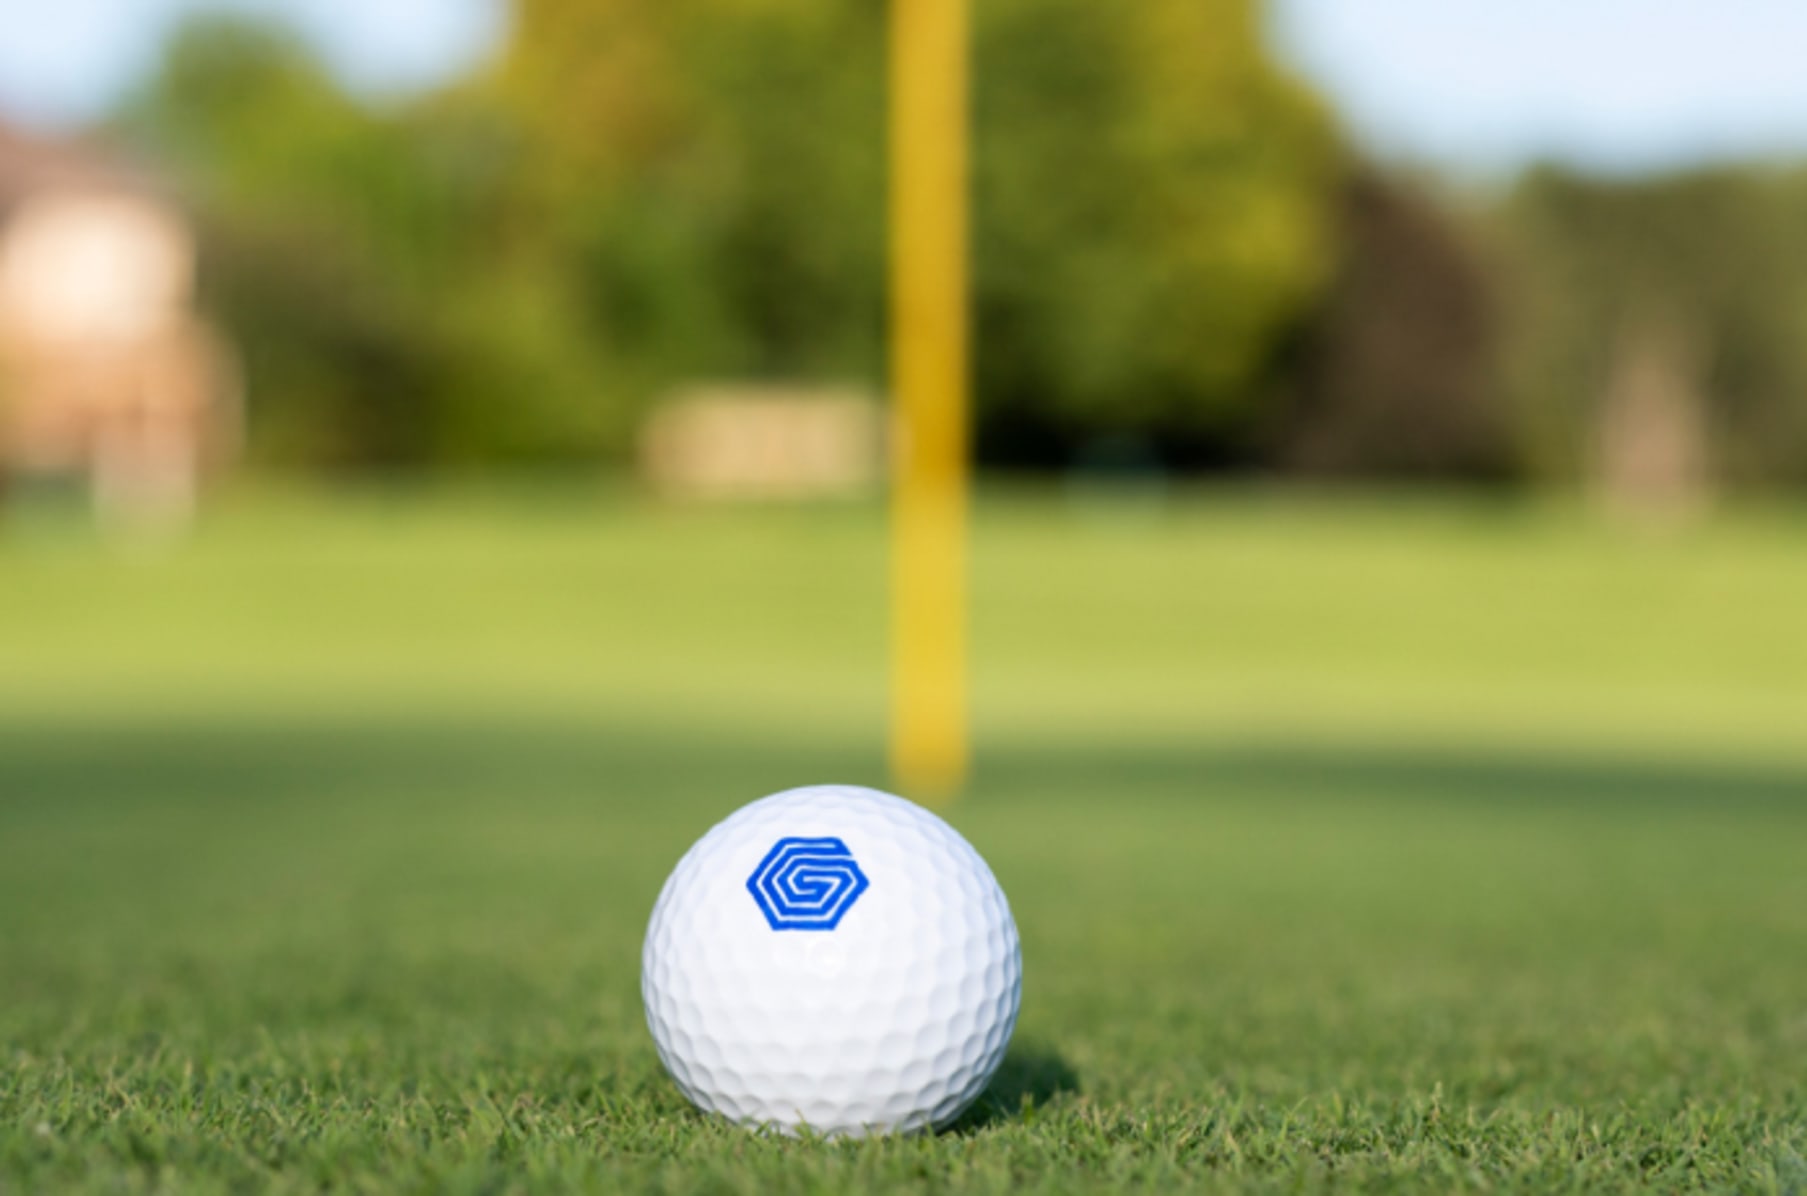 Interesseren Makkelijk te begrijpen Ideaal Graff Golf: The World's First Smart Golf Ball | Indiegogo